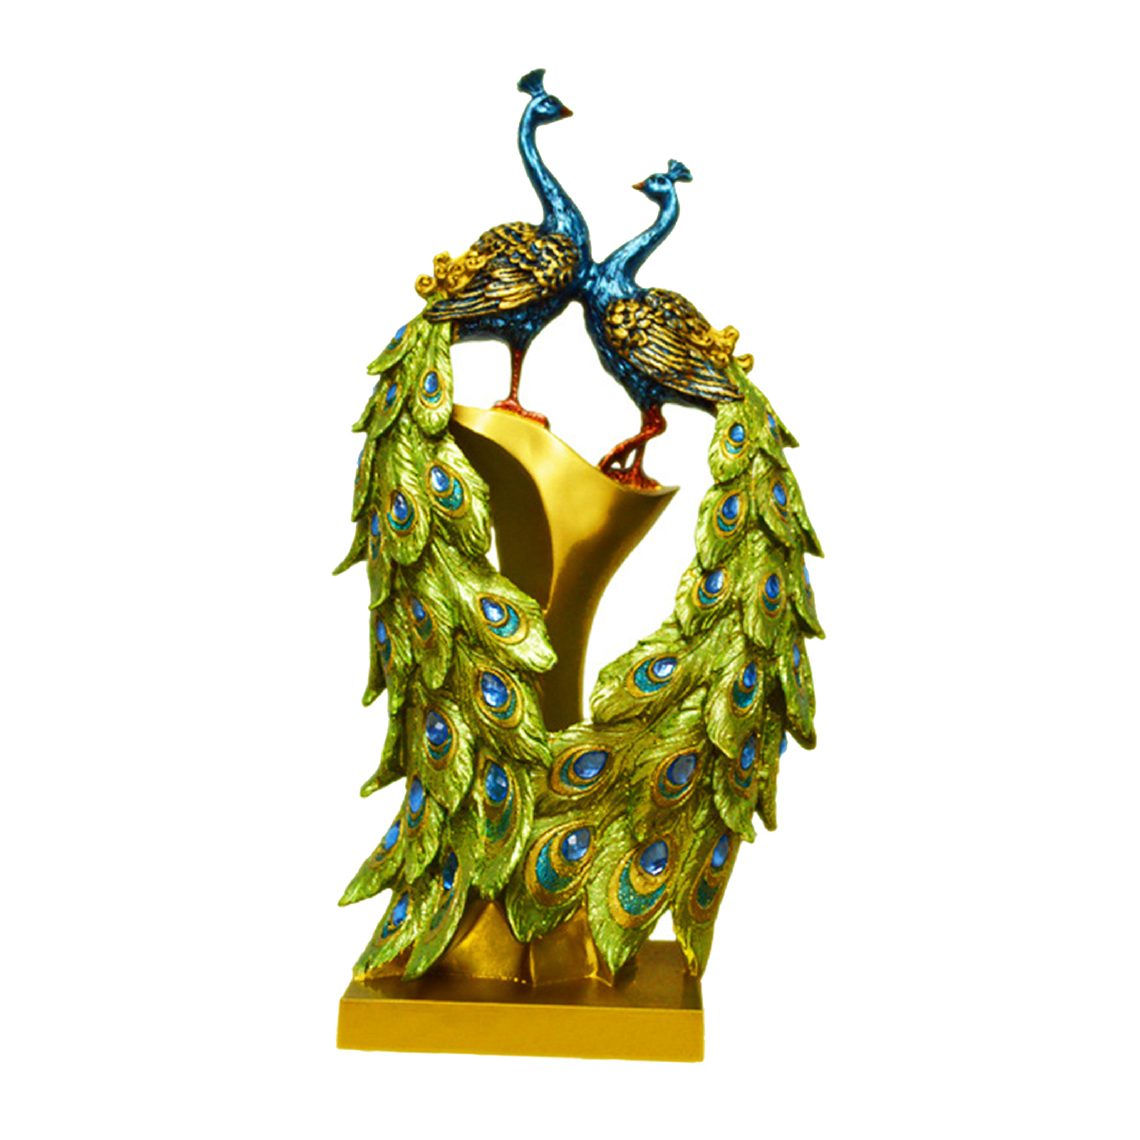 marque generique - Chic Résine Paon Figurine Sculpture Ornement Bureau Décoration Oeuvre A - Statues